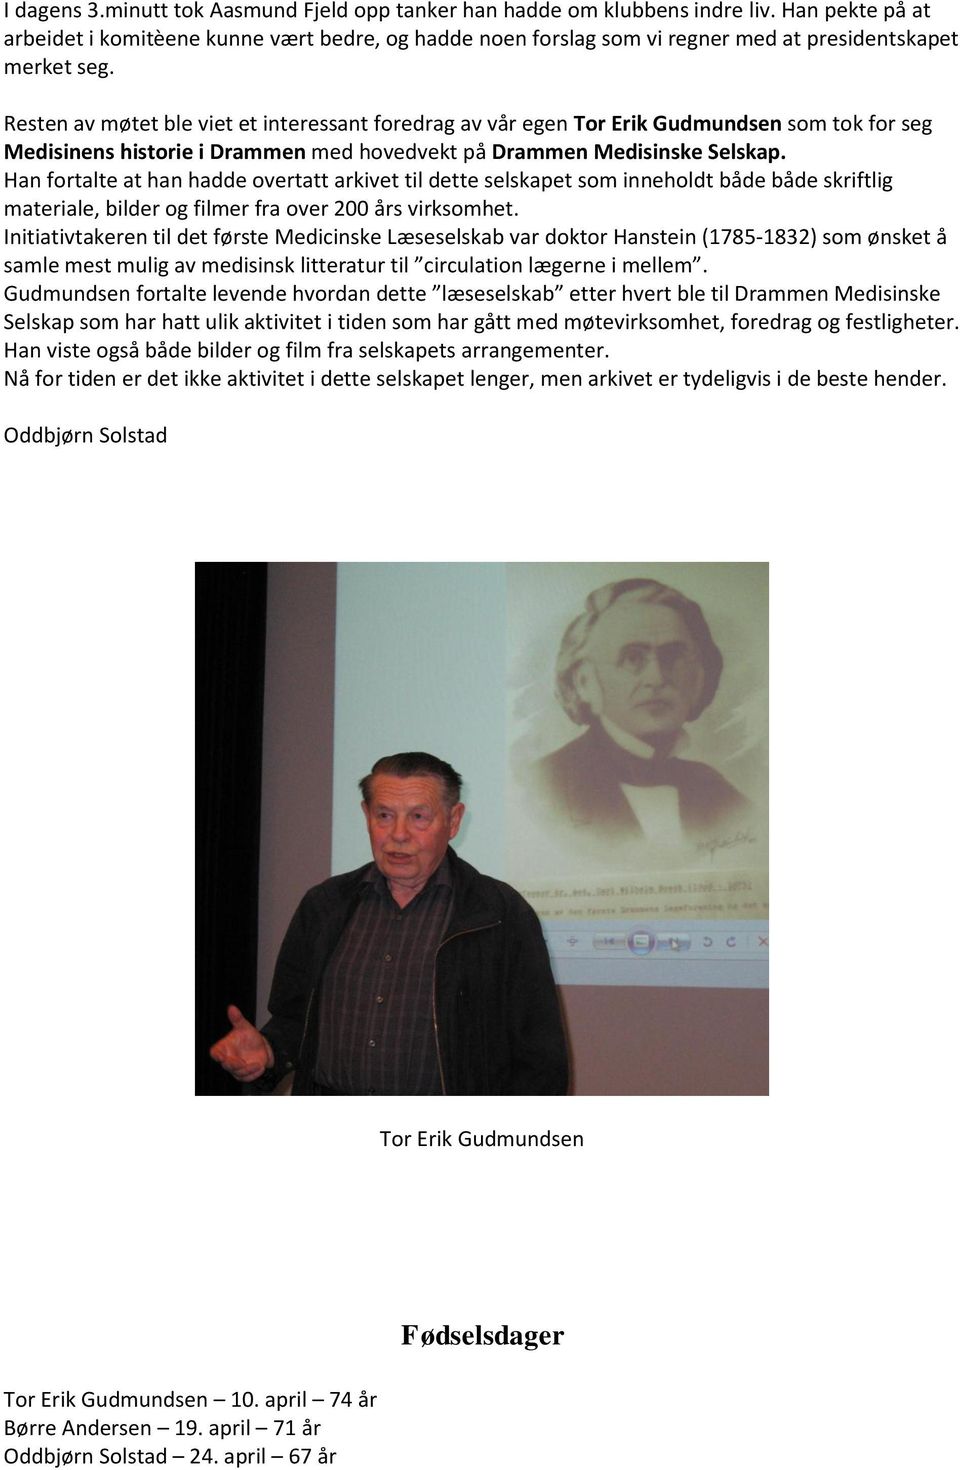 Resten av møtet ble viet et interessant foredrag av vår egen Tor Erik Gudmundsen som tok for seg Medisinens historie i Drammen med hovedvekt på Drammen Medisinske Selskap.